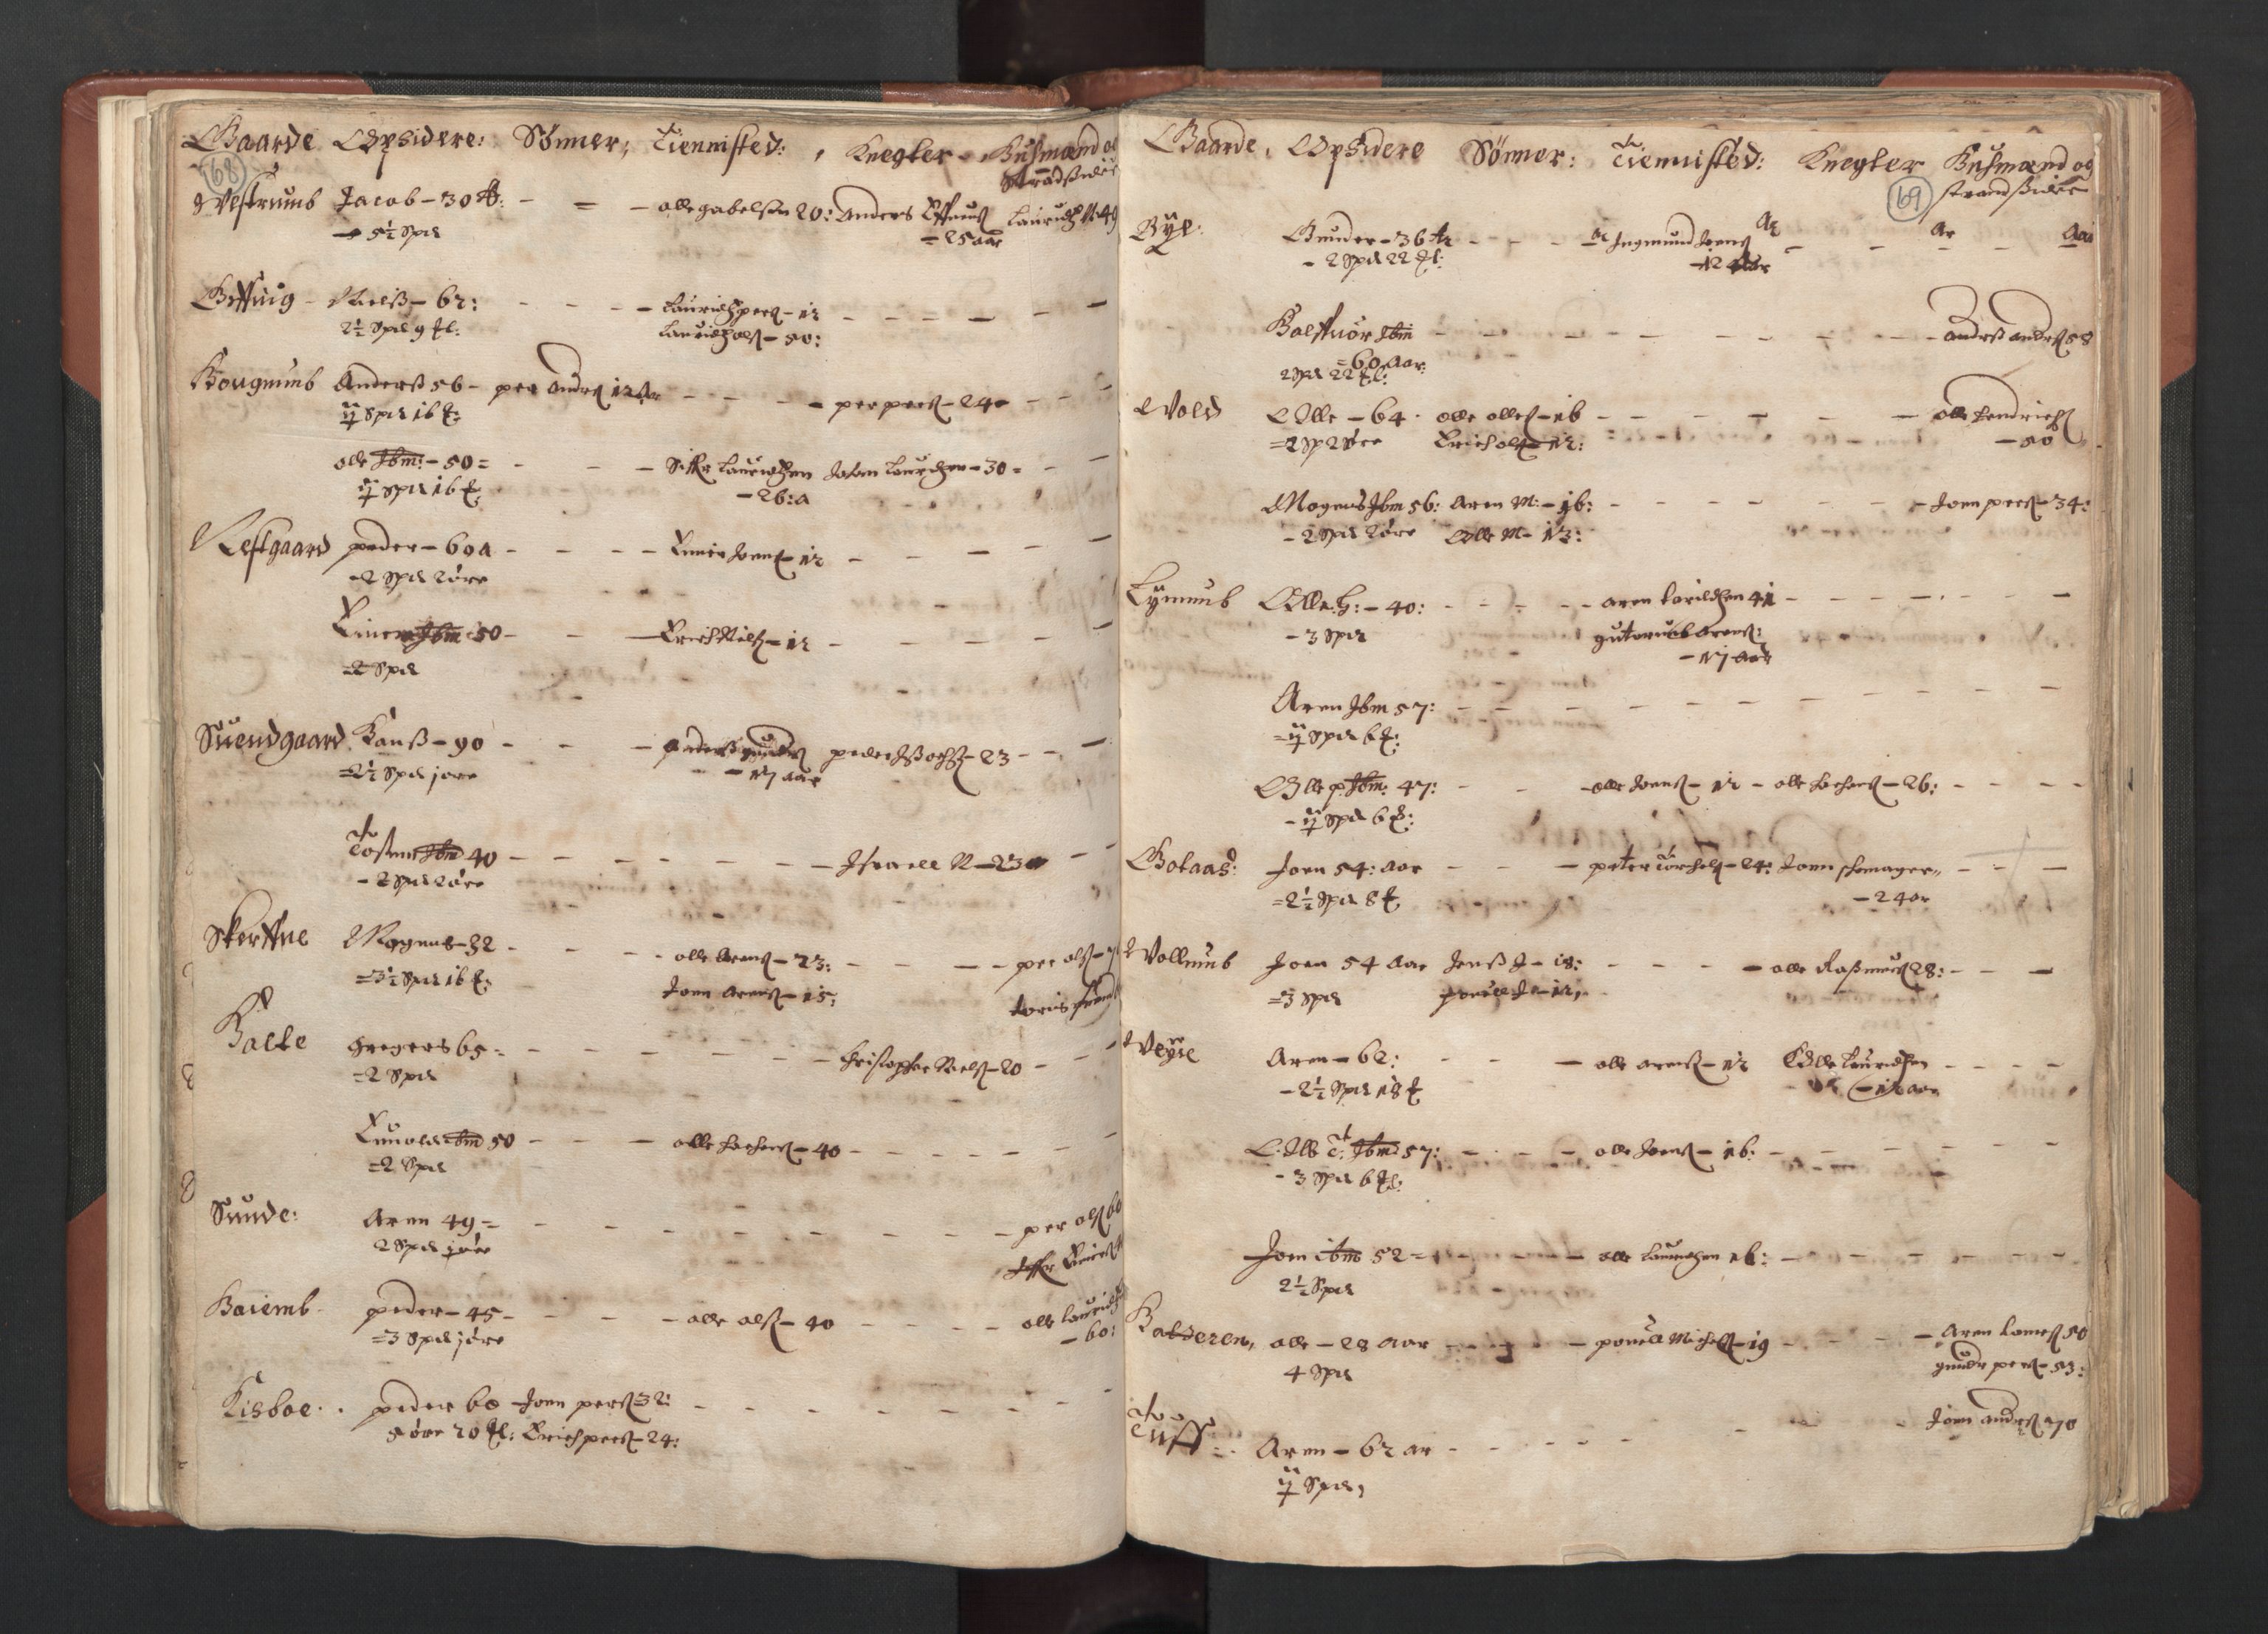 RA, Fogdenes og sorenskrivernes manntall 1664-1666, nr. 19: Fosen fogderi, Inderøy fogderi, Selbu fogderi, Namdal fogderi og Stjørdal fogderi, 1664-1665, s. 68-69